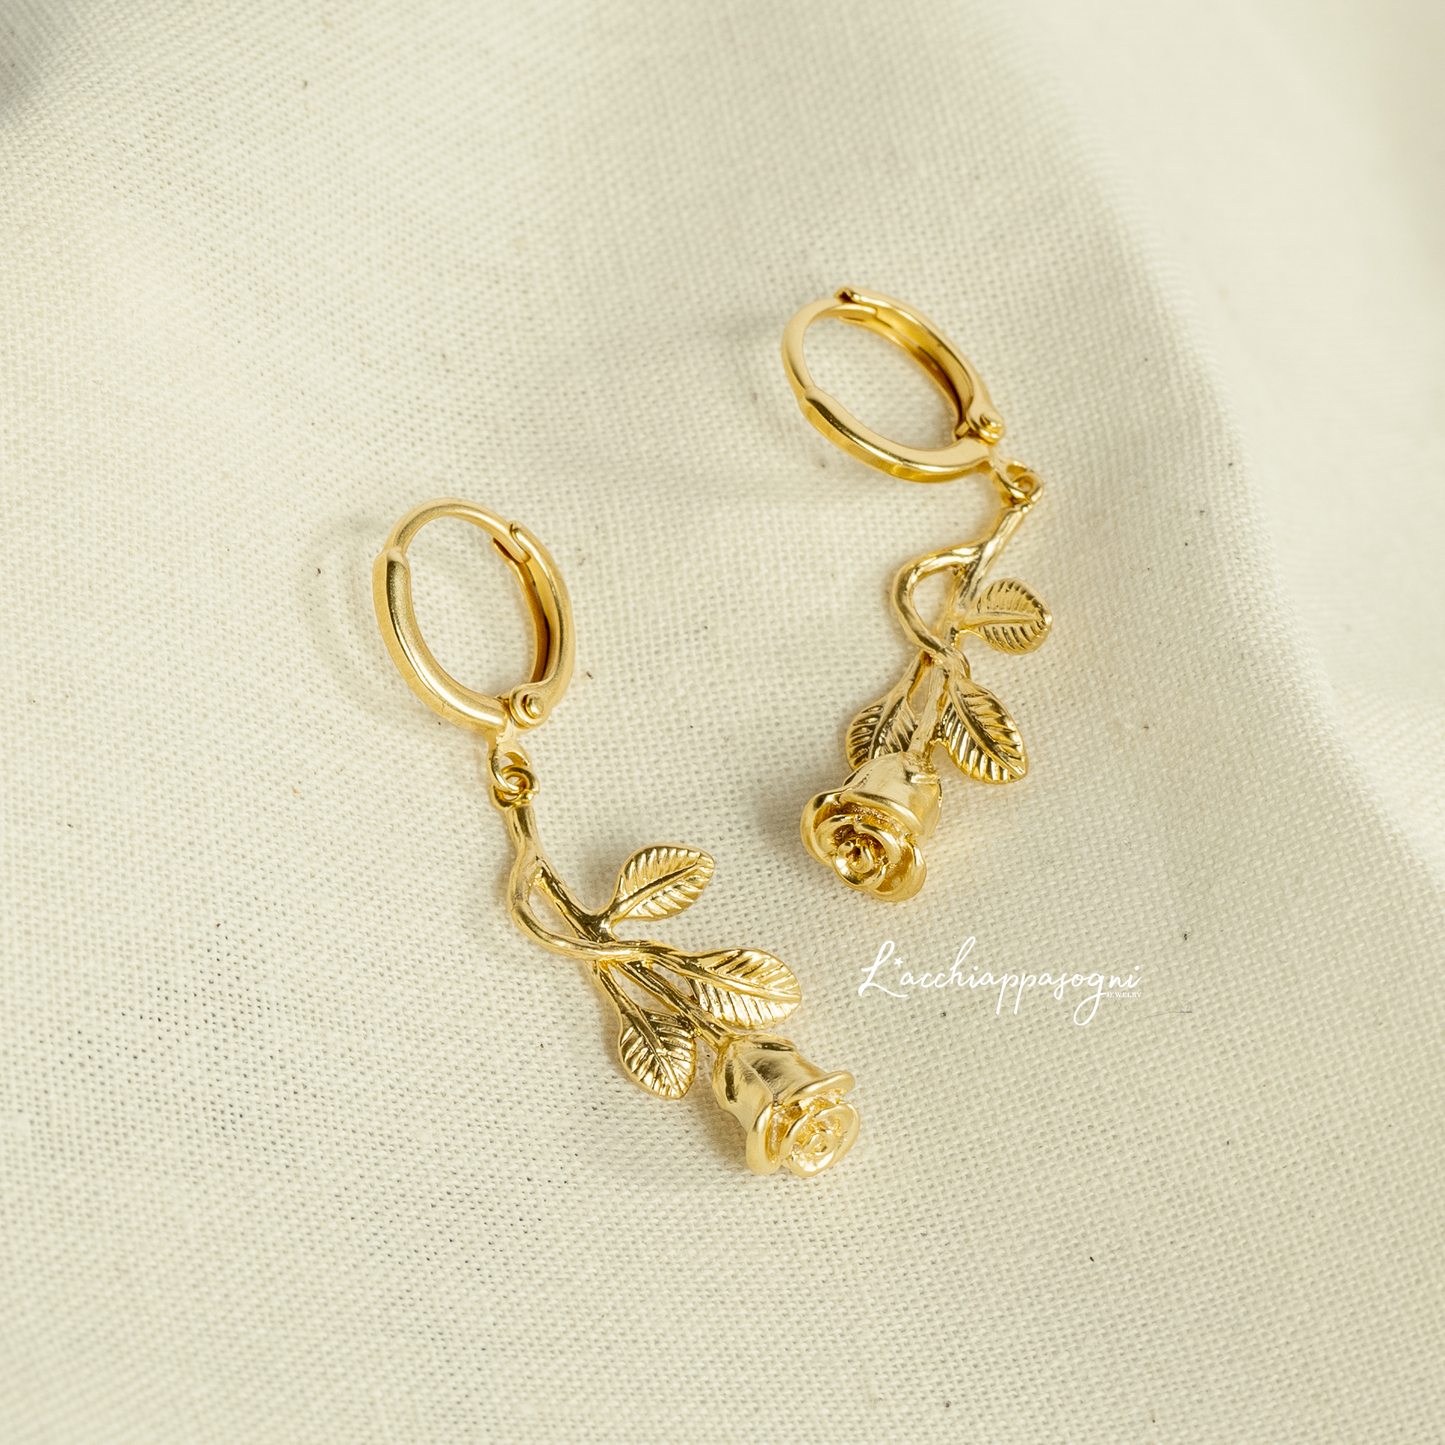 Rose Spell // Rose Charm Pendant Floral Hoops Earrings - Gold